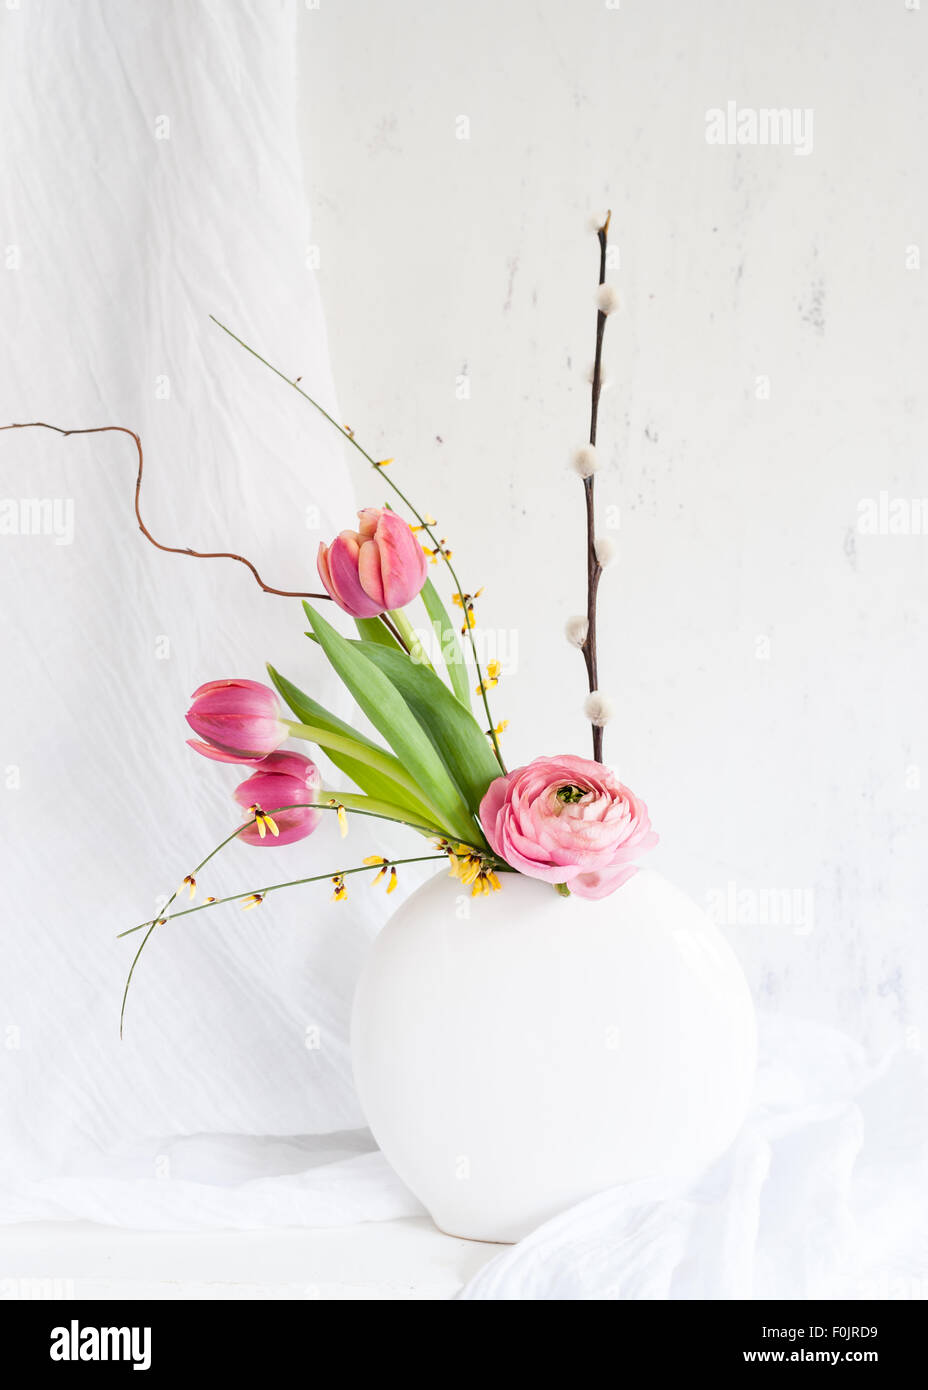 Una simple flor arreglos de tulipanes rosados, ranunculus, amarilla genista y ramitas de sauce en un jarrón redondo Foto de stock